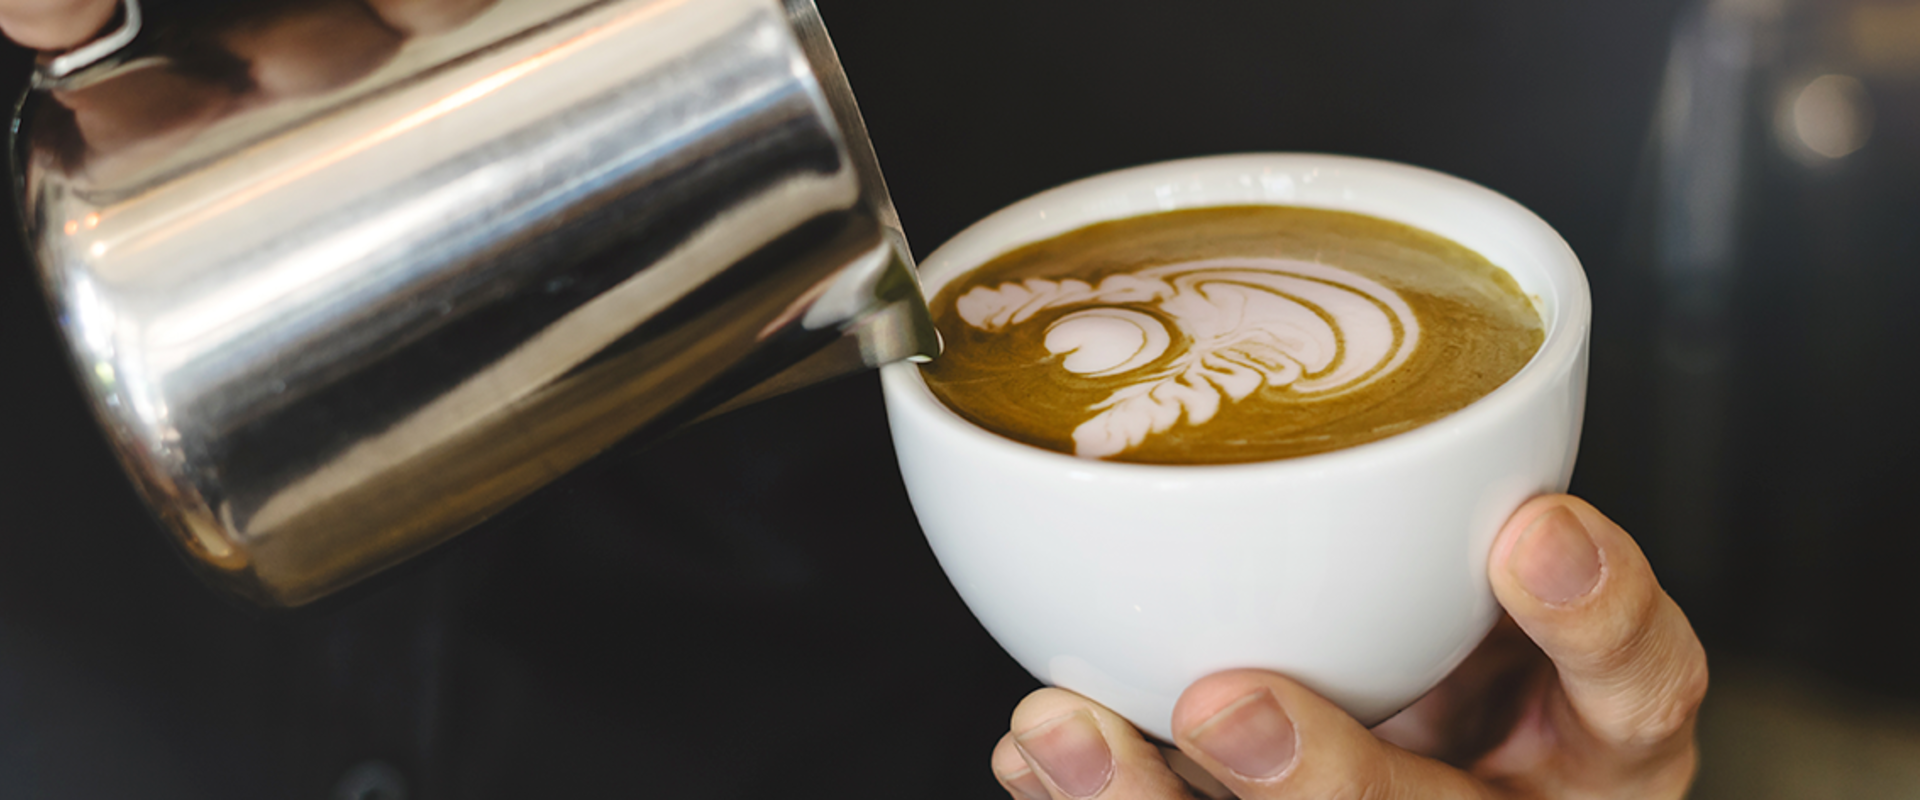 Nestlé lanza programa de capacitación gratuito orientado a jóvenes en la preparación de café